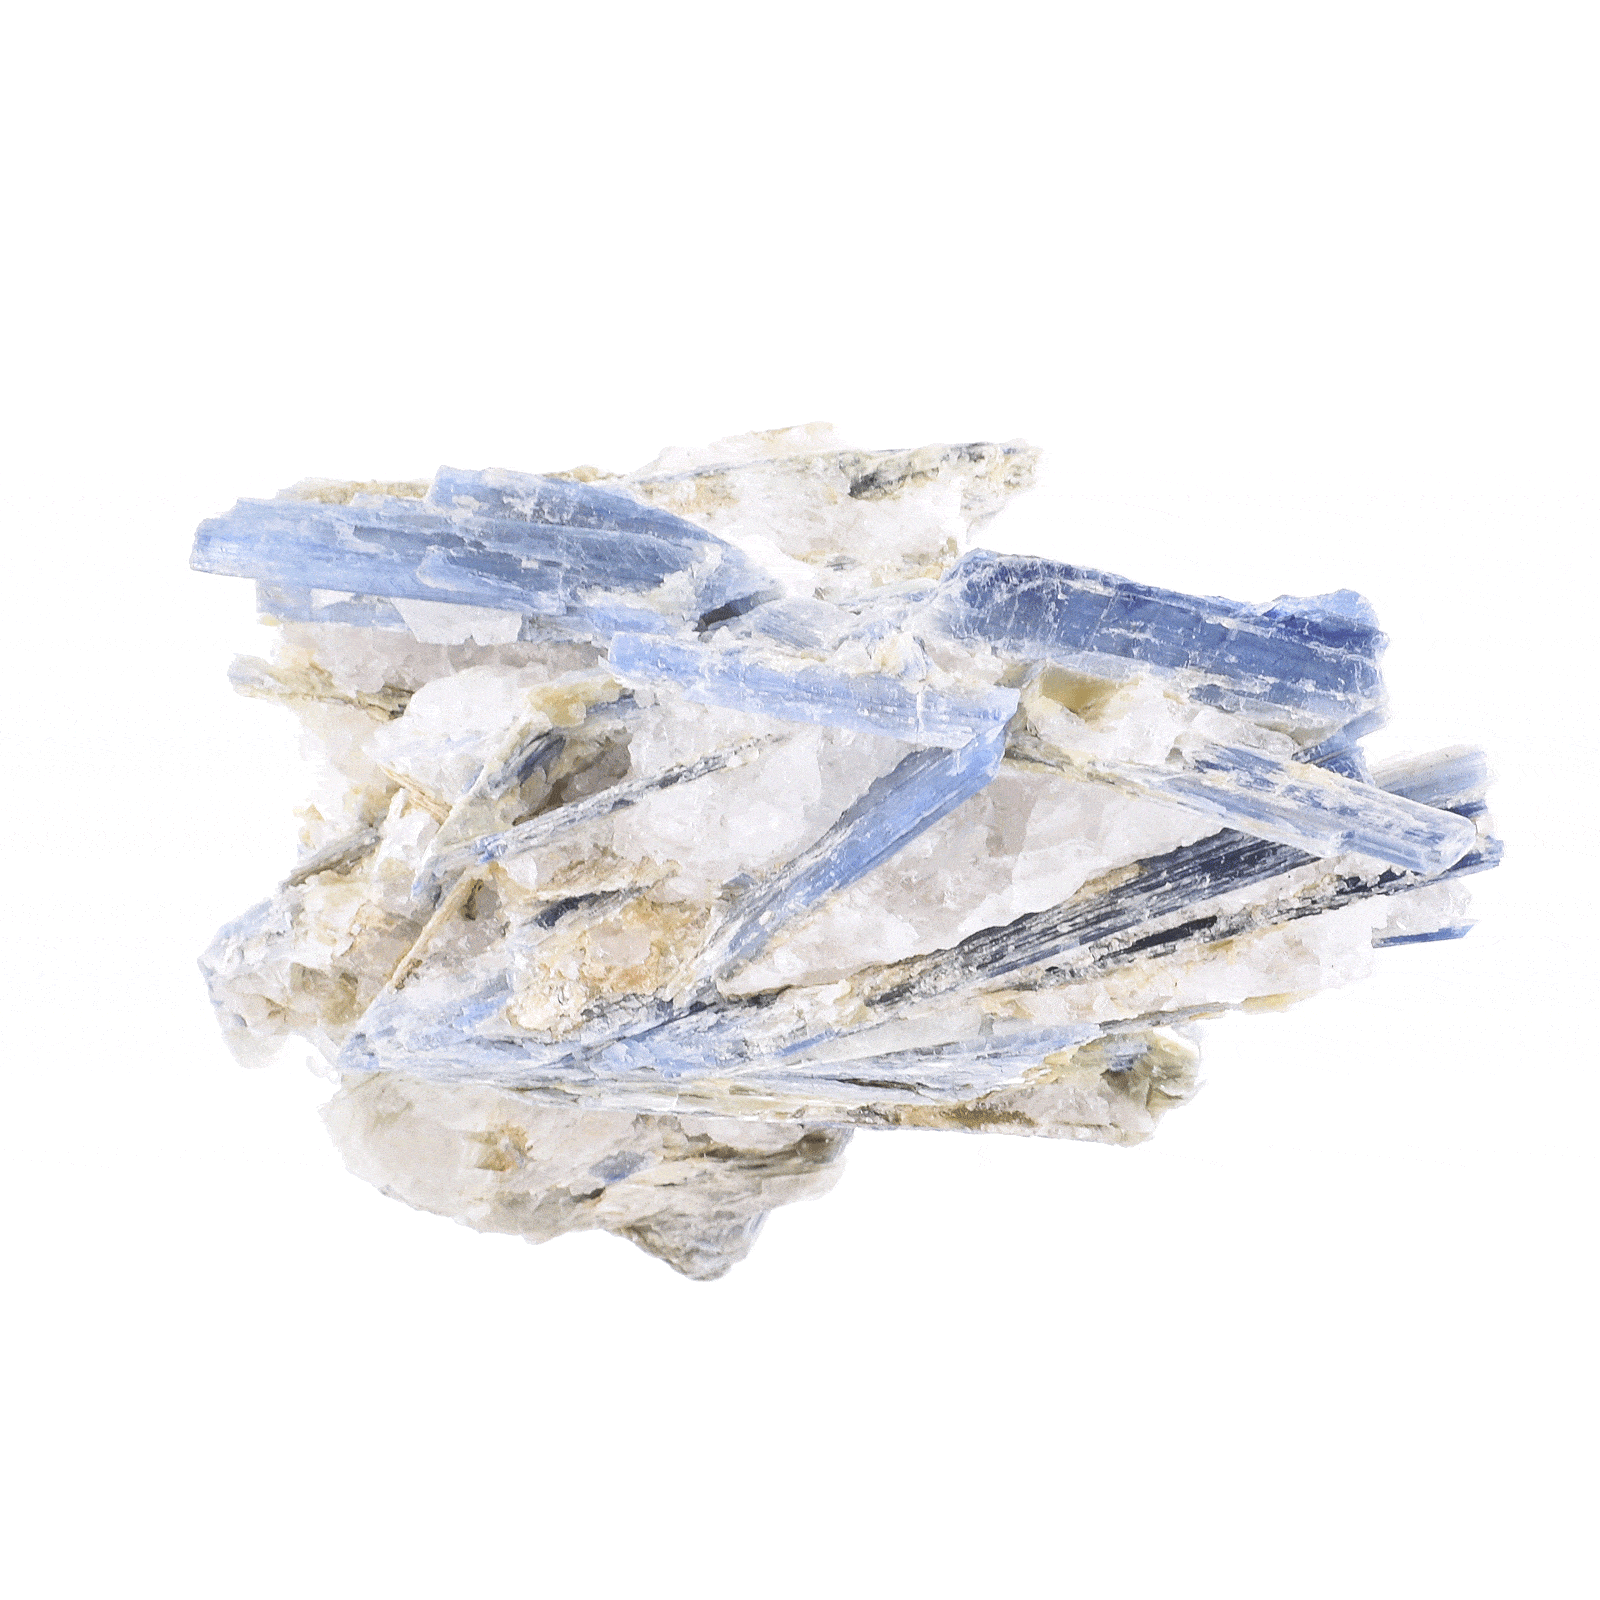 Ακατέργαστο κομμάτι φυσικής πέτρας μπλε κυανίτη, μεγέθους 8cm. Αγοράστε online shop.